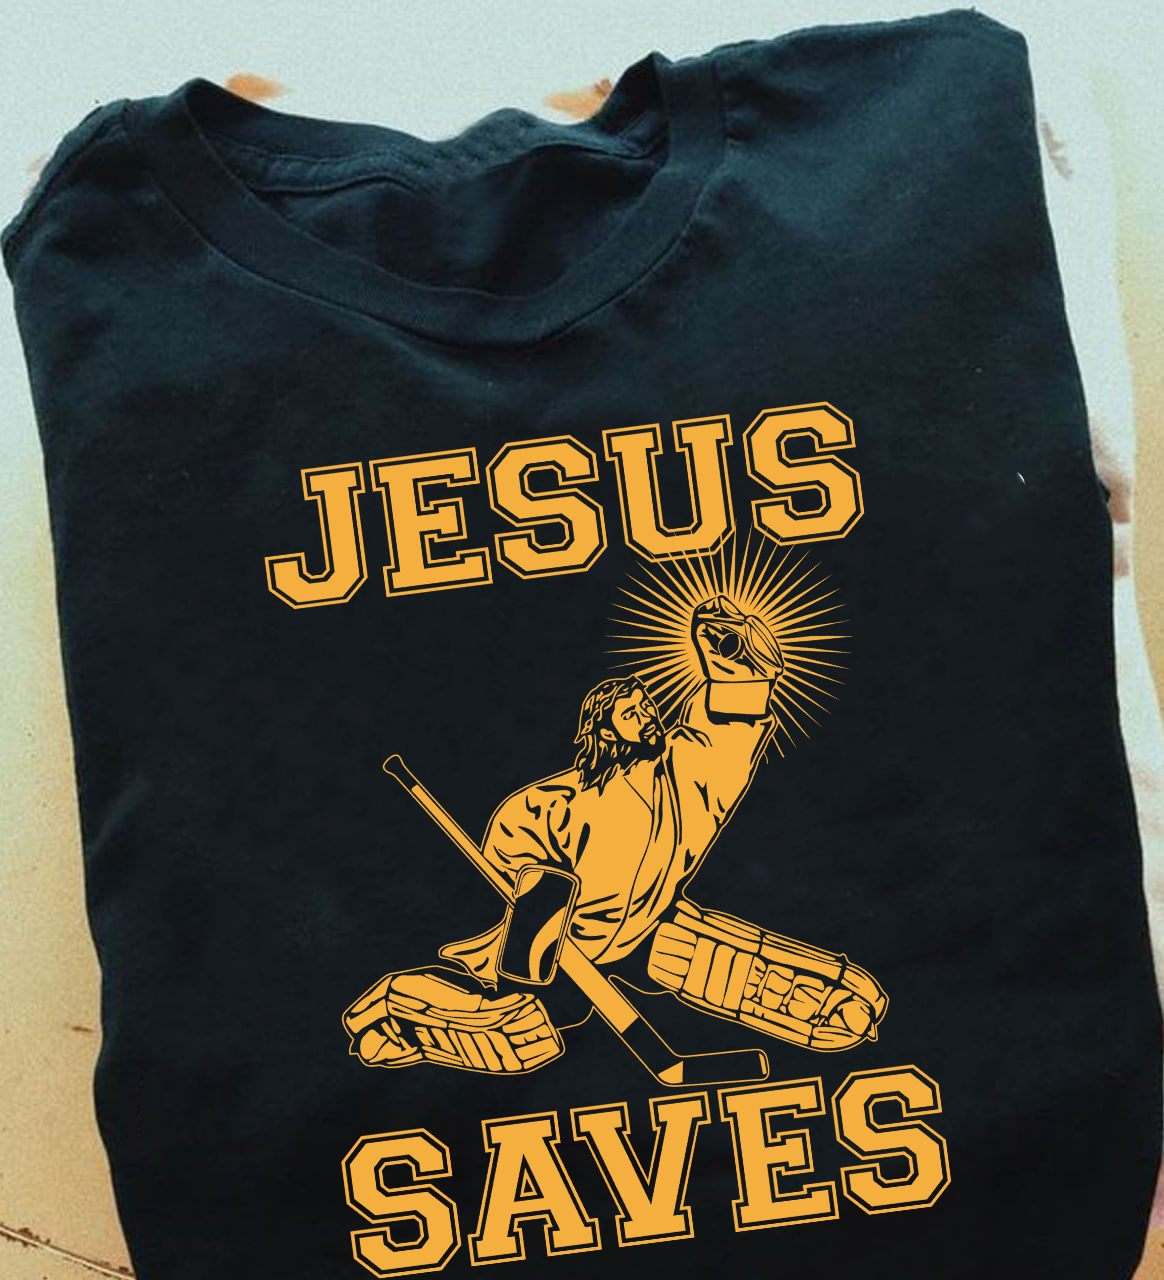 Jesus saves - Jesus hockey player, love playing hockey